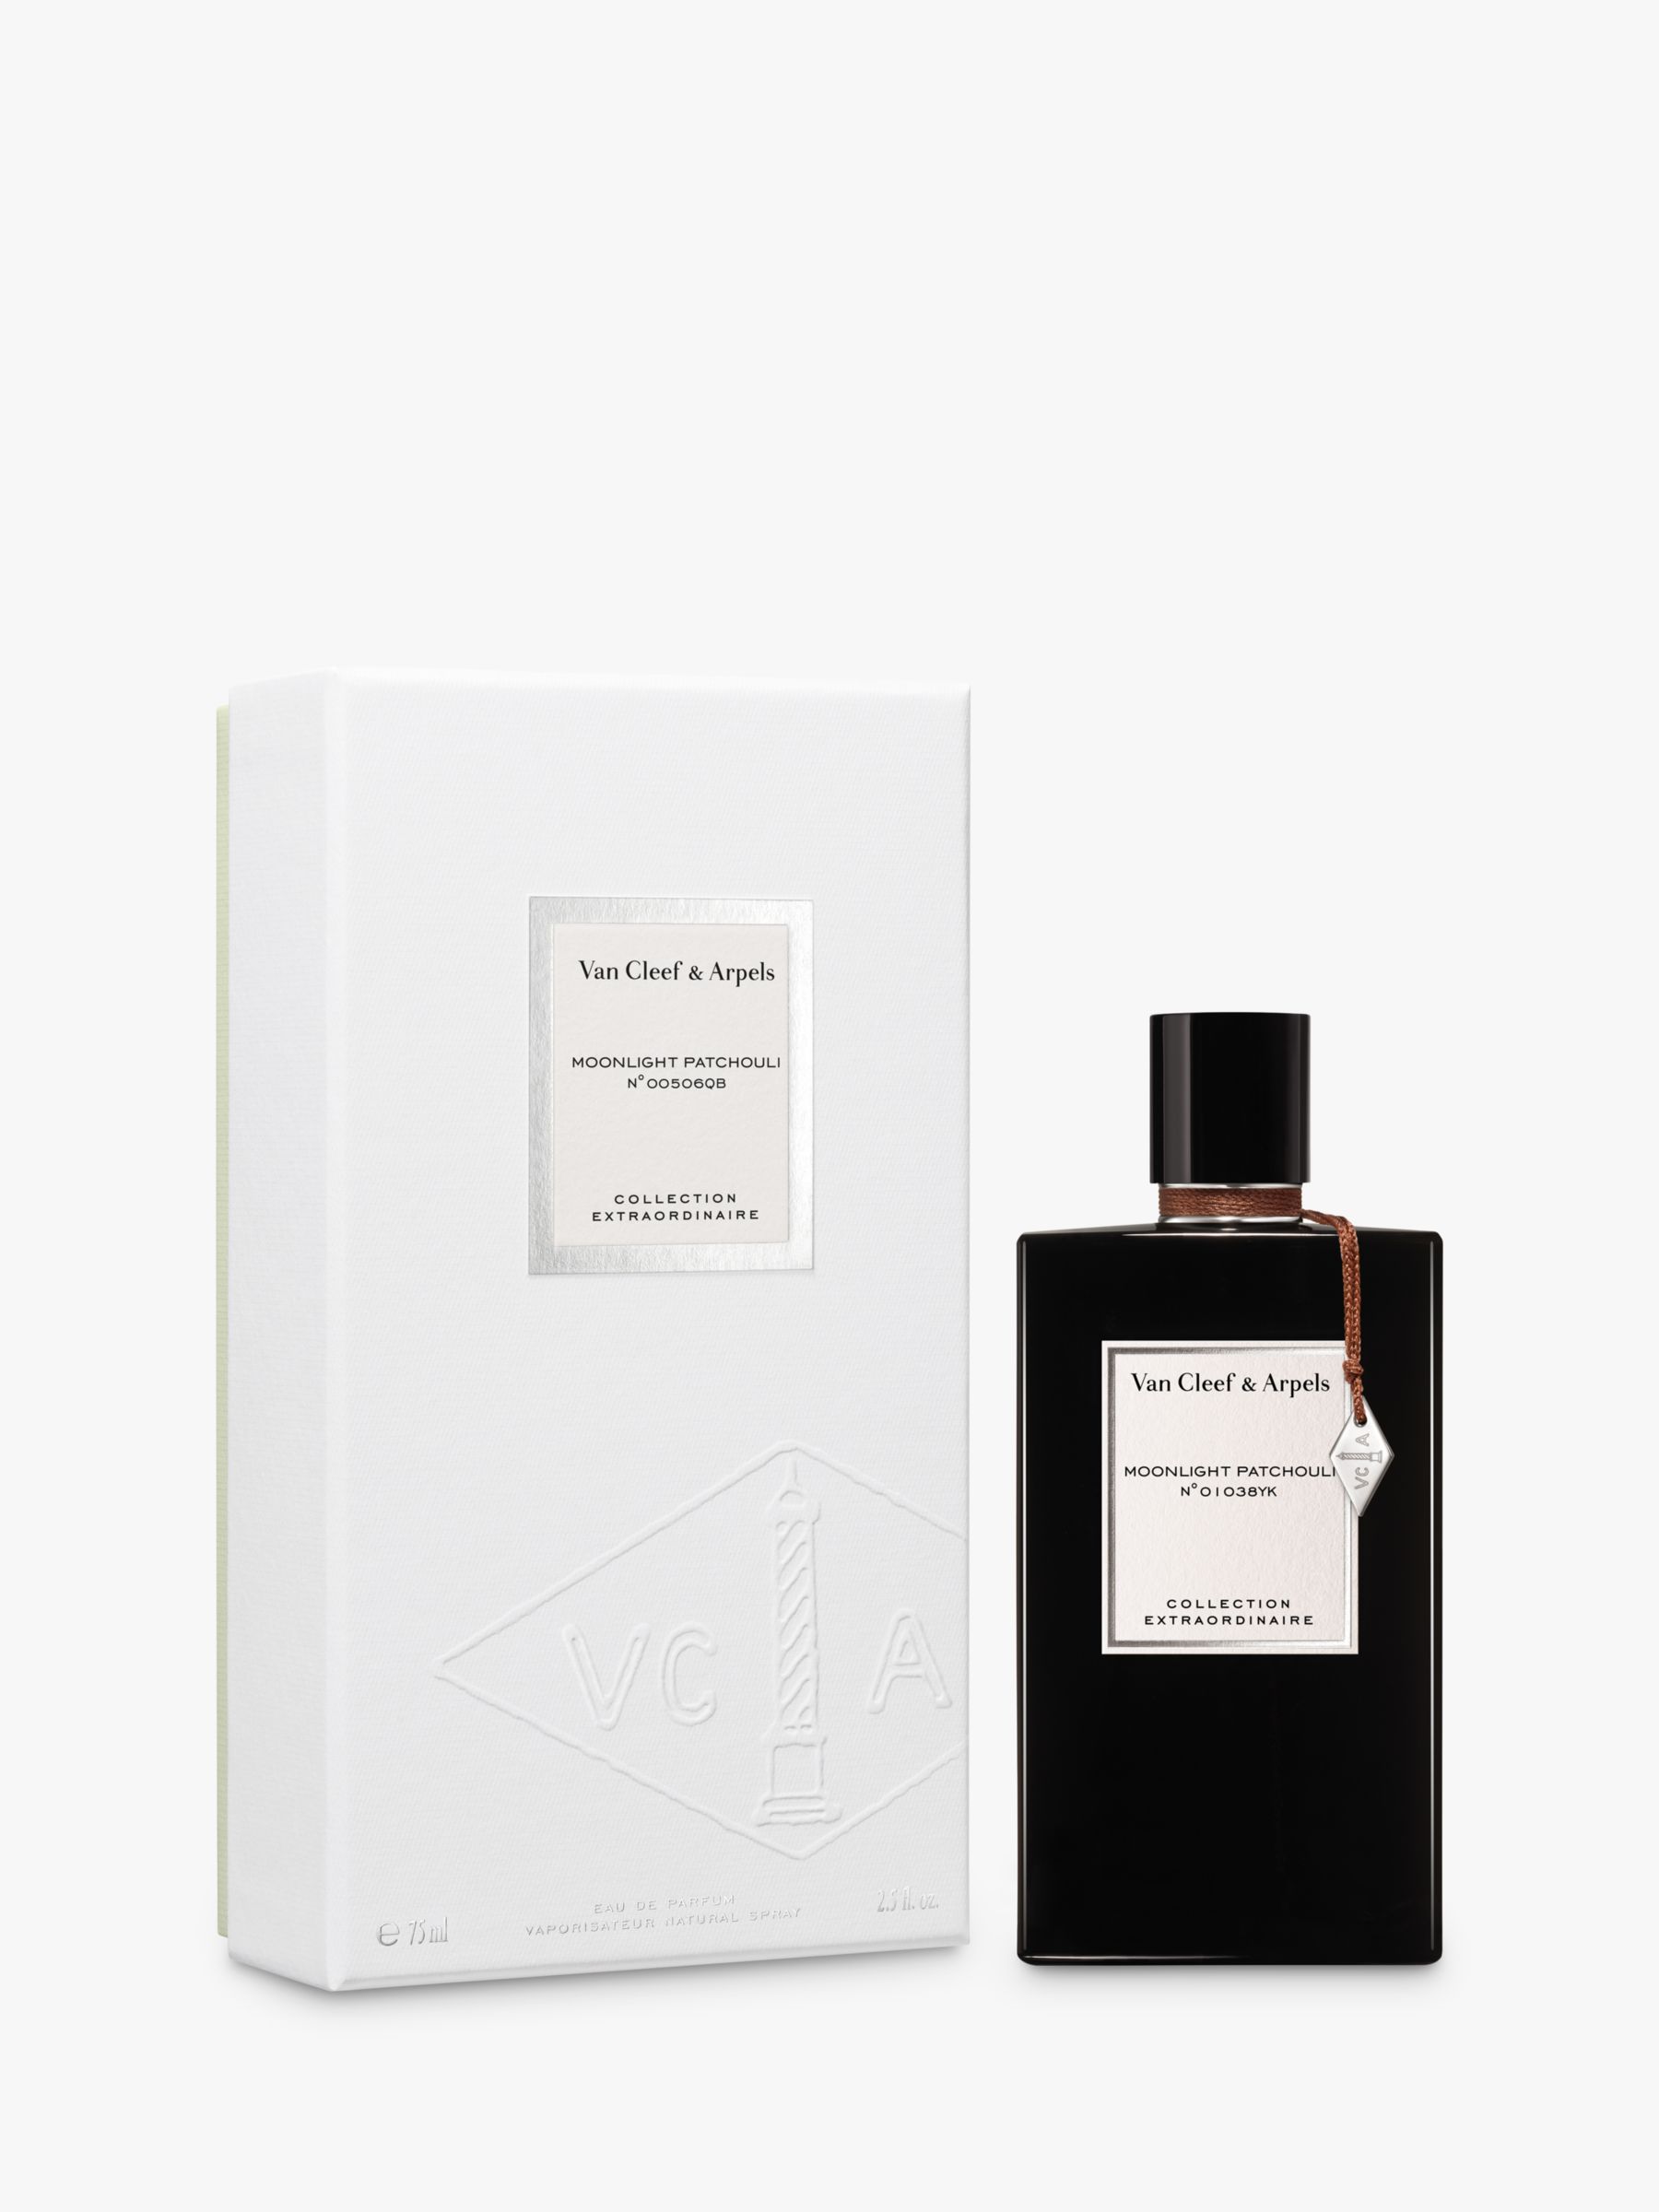 Van Cleef & Arpels Collection Extraordinaire Moonlight Patchouli Eau de Parfum, 75ml